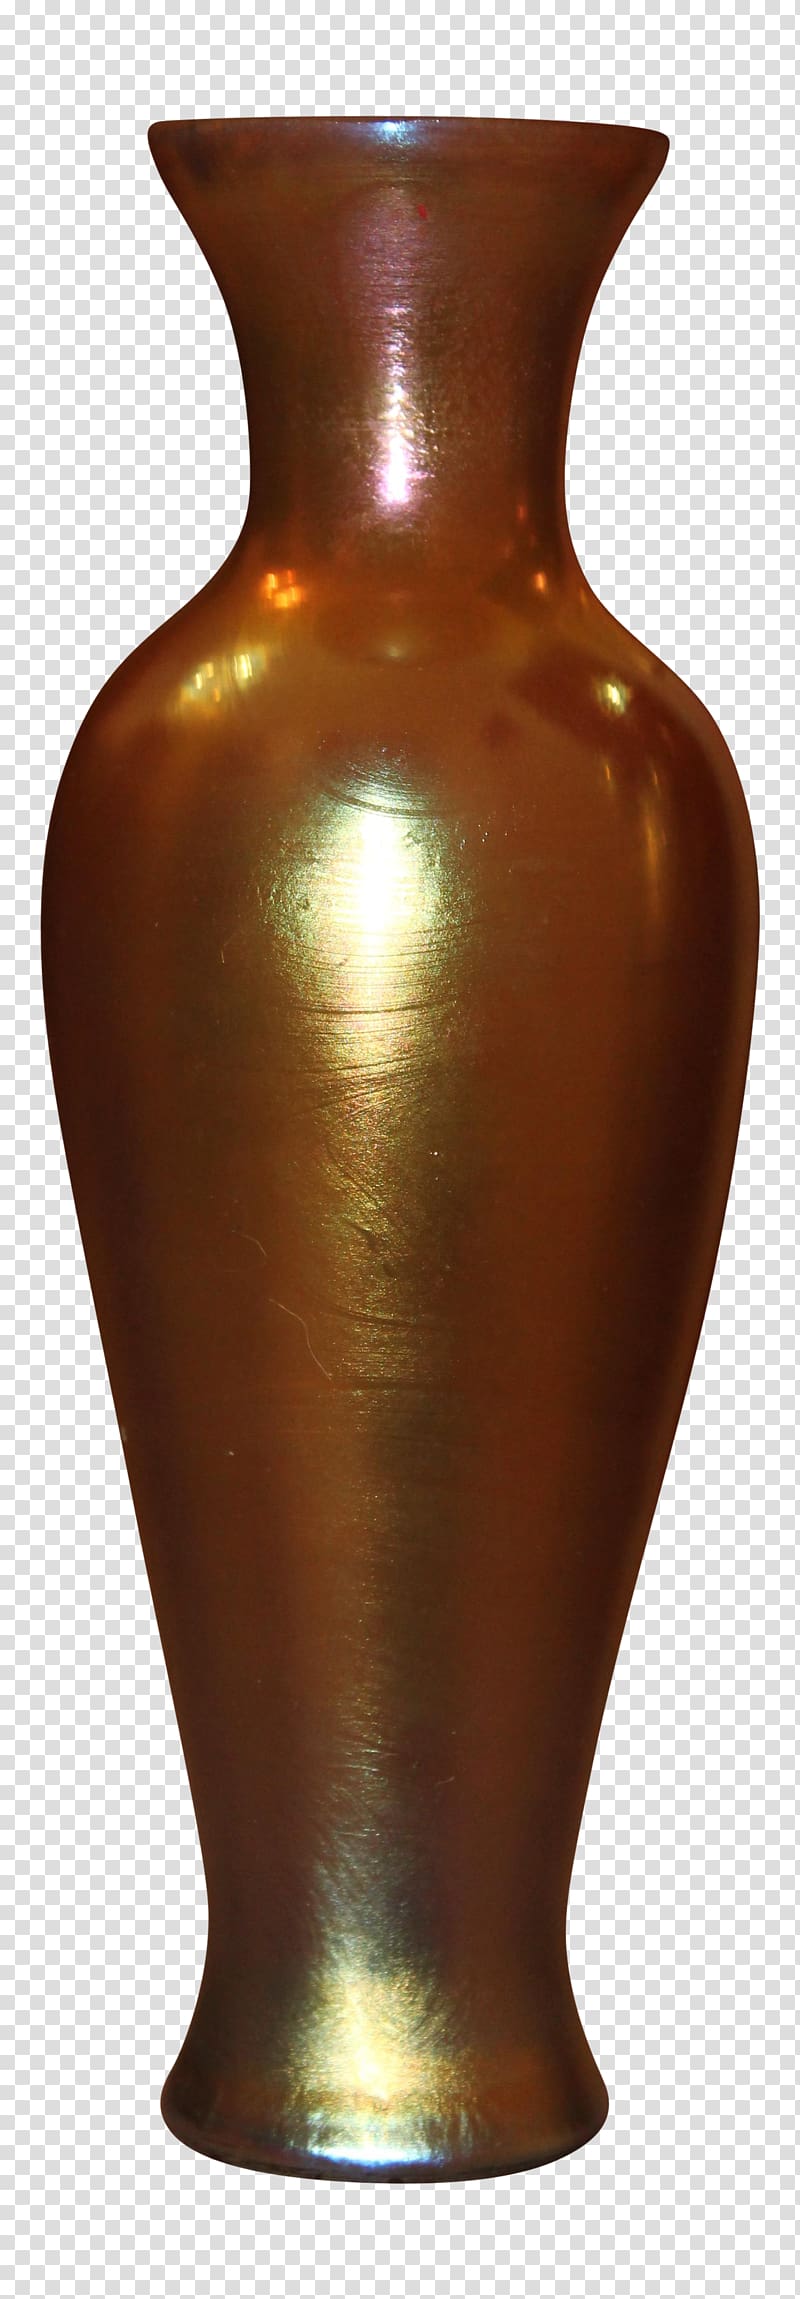 Vase Urn, vase transparent background PNG clipart